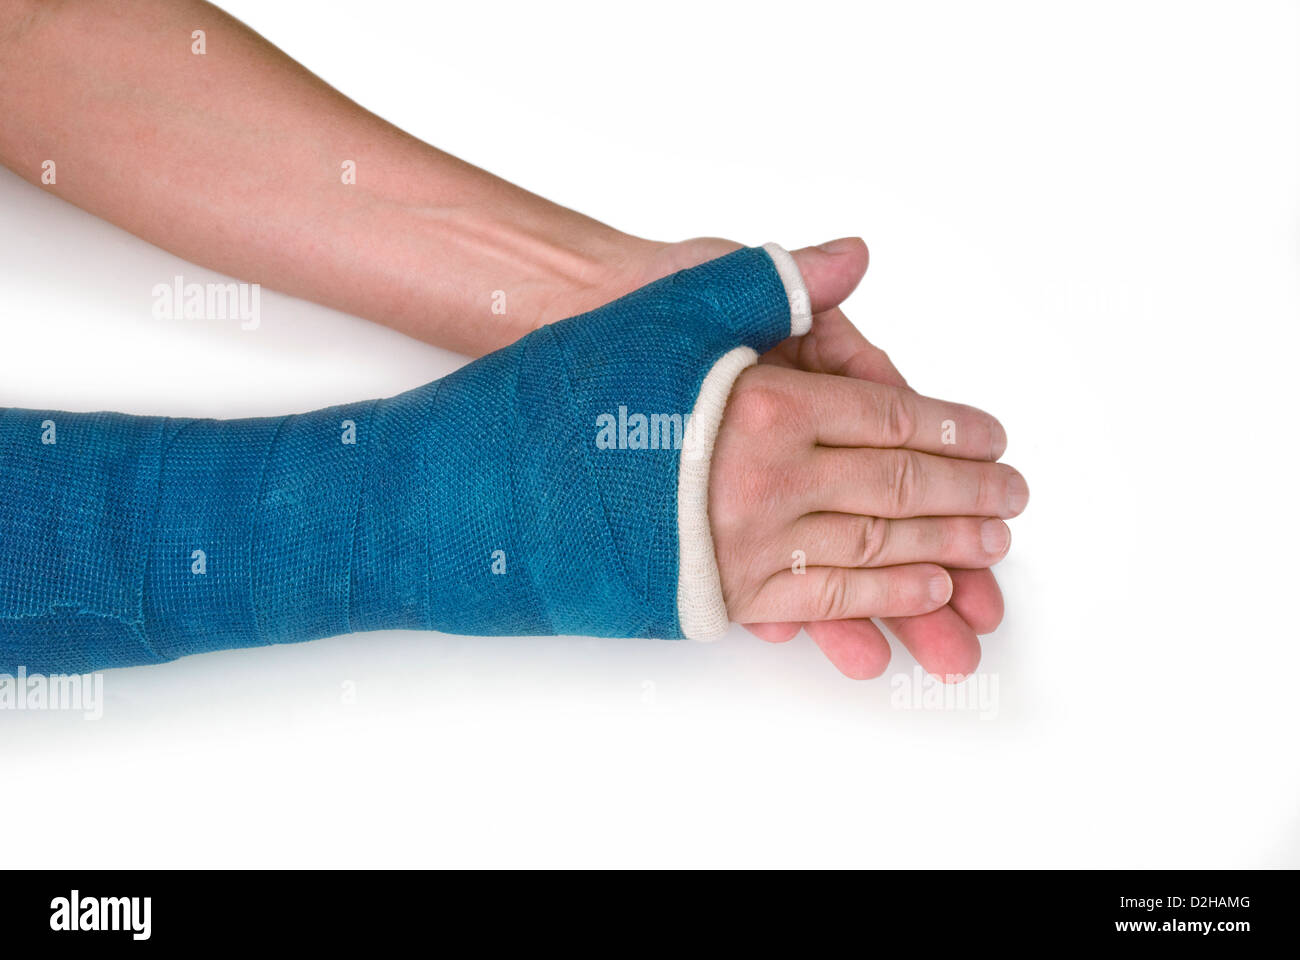 Polso rotto il braccio con un blu della fibra di vetro colato su sfondo bianco Foto Stock